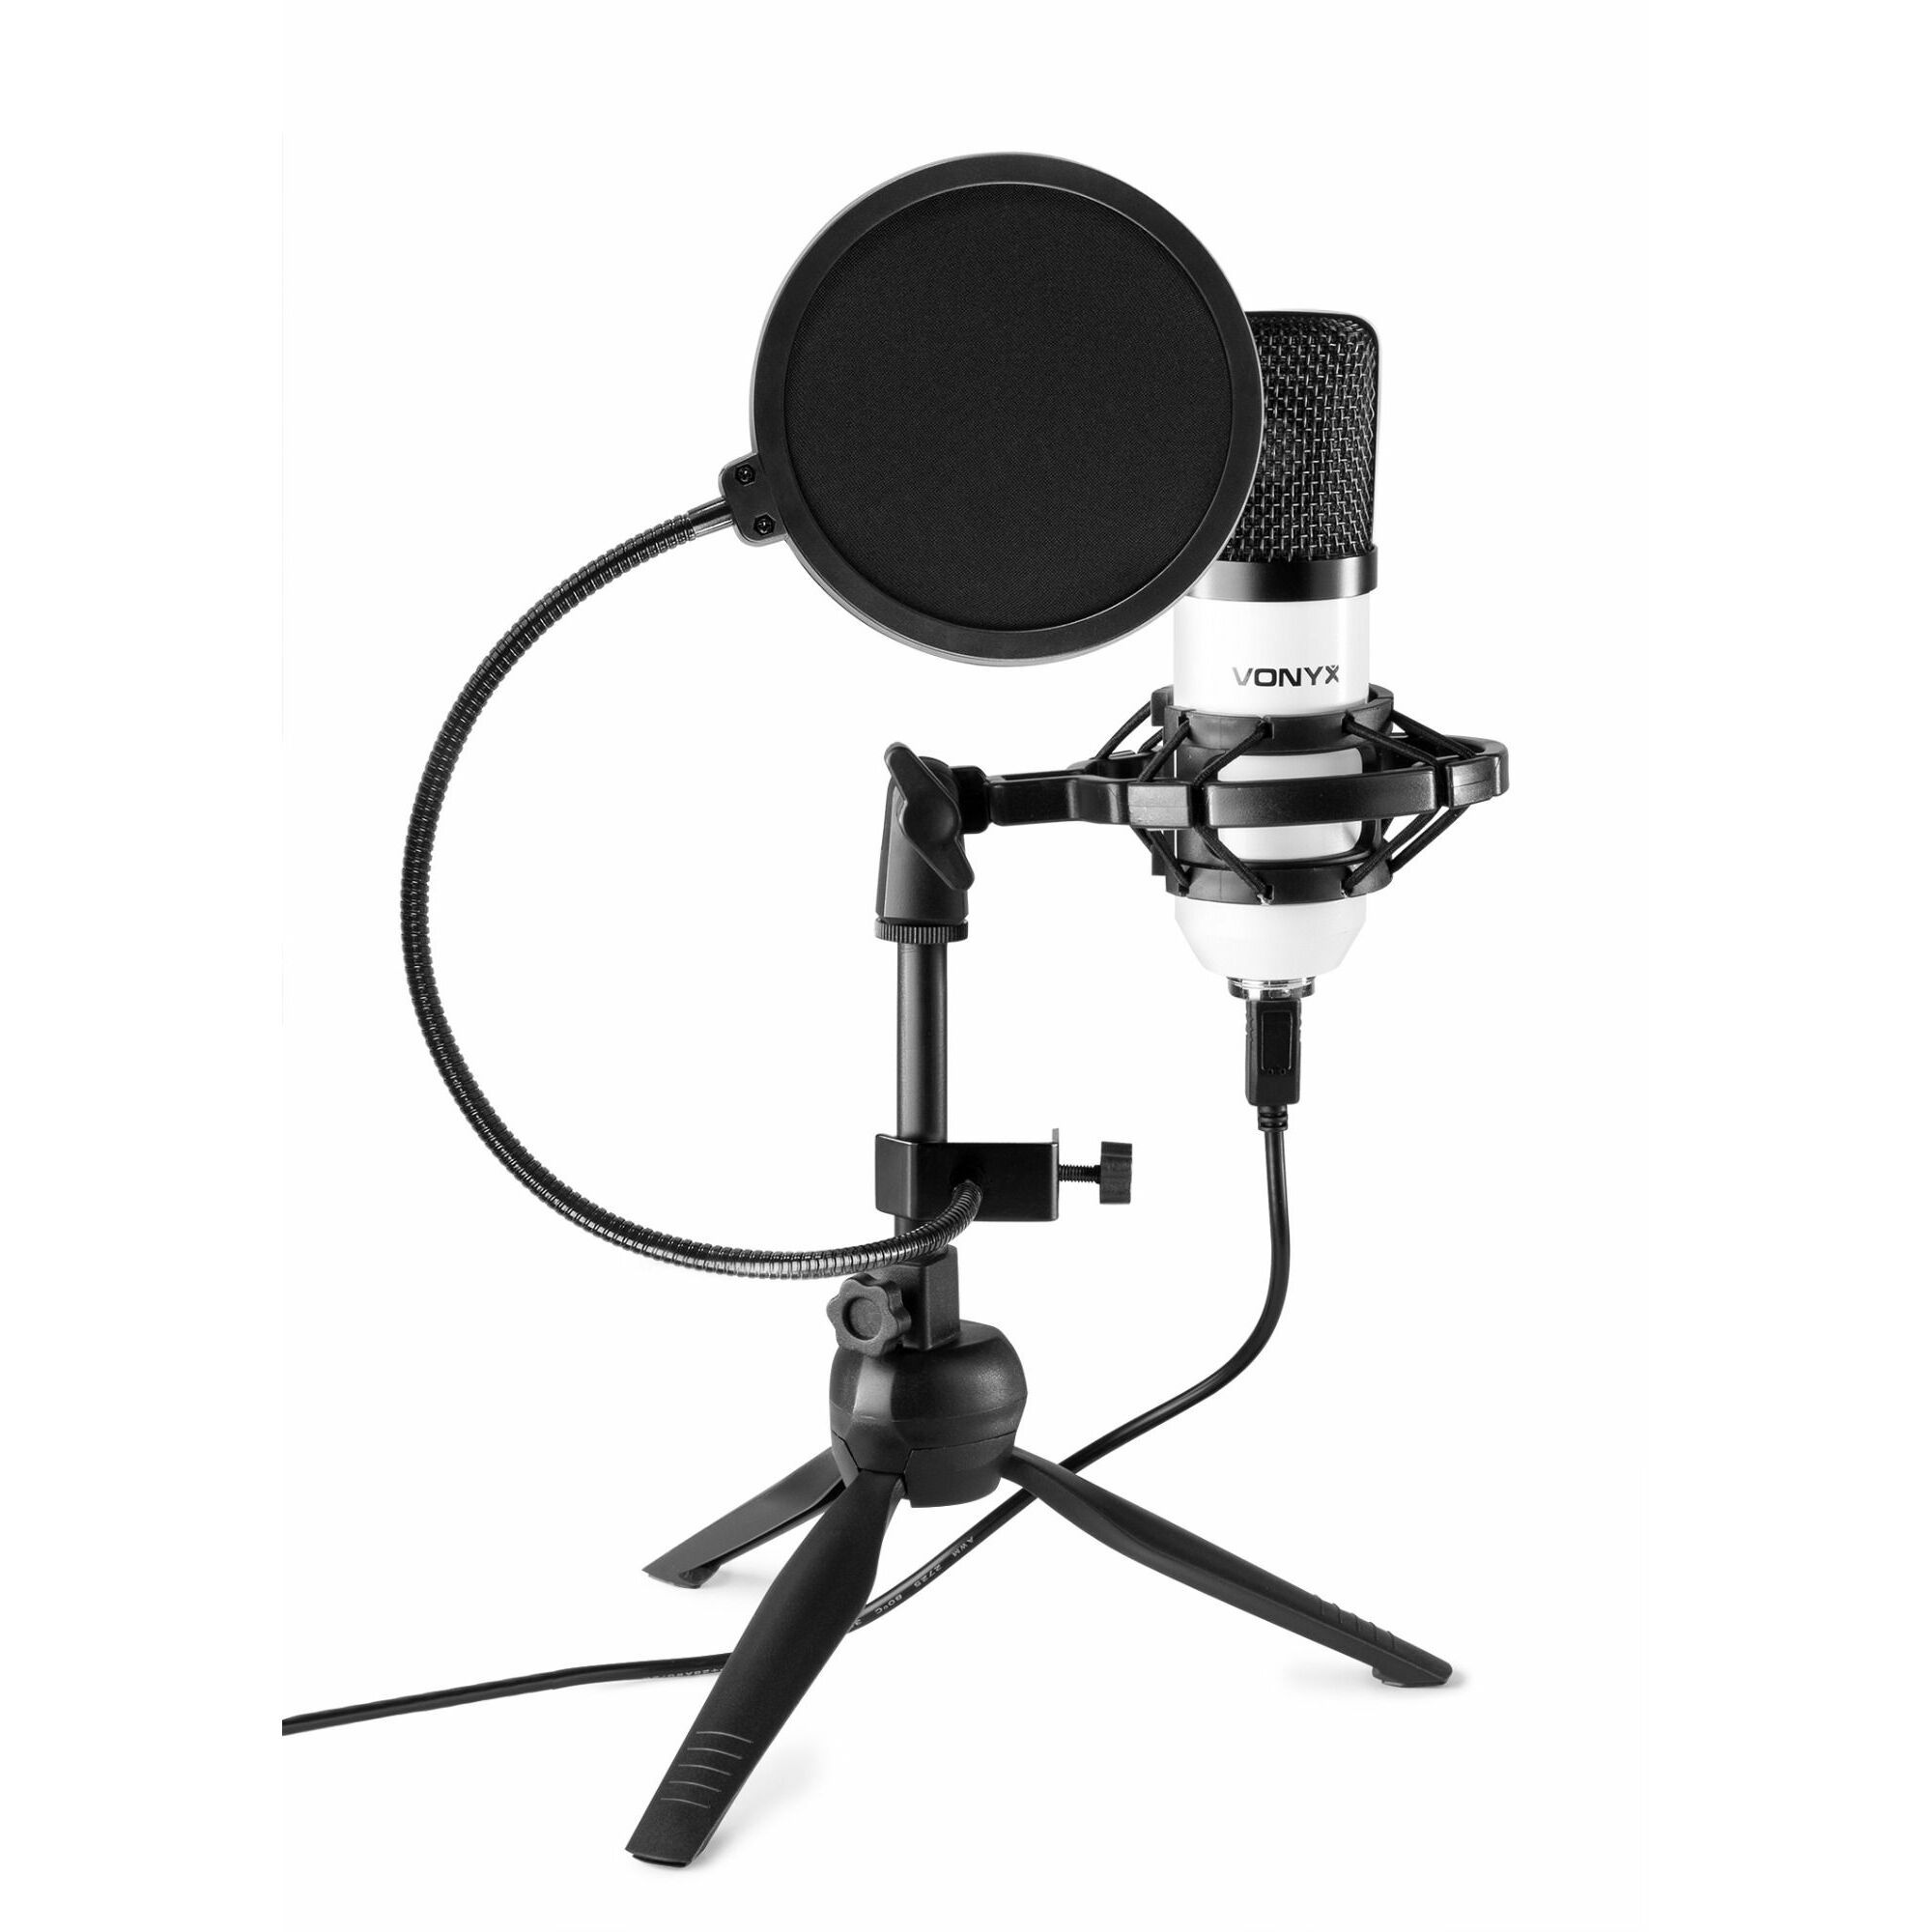 Kan worden berekend Verstikken Traditie Vonyx CM300W USB studio microfoon met popfilter - Wit kopen?